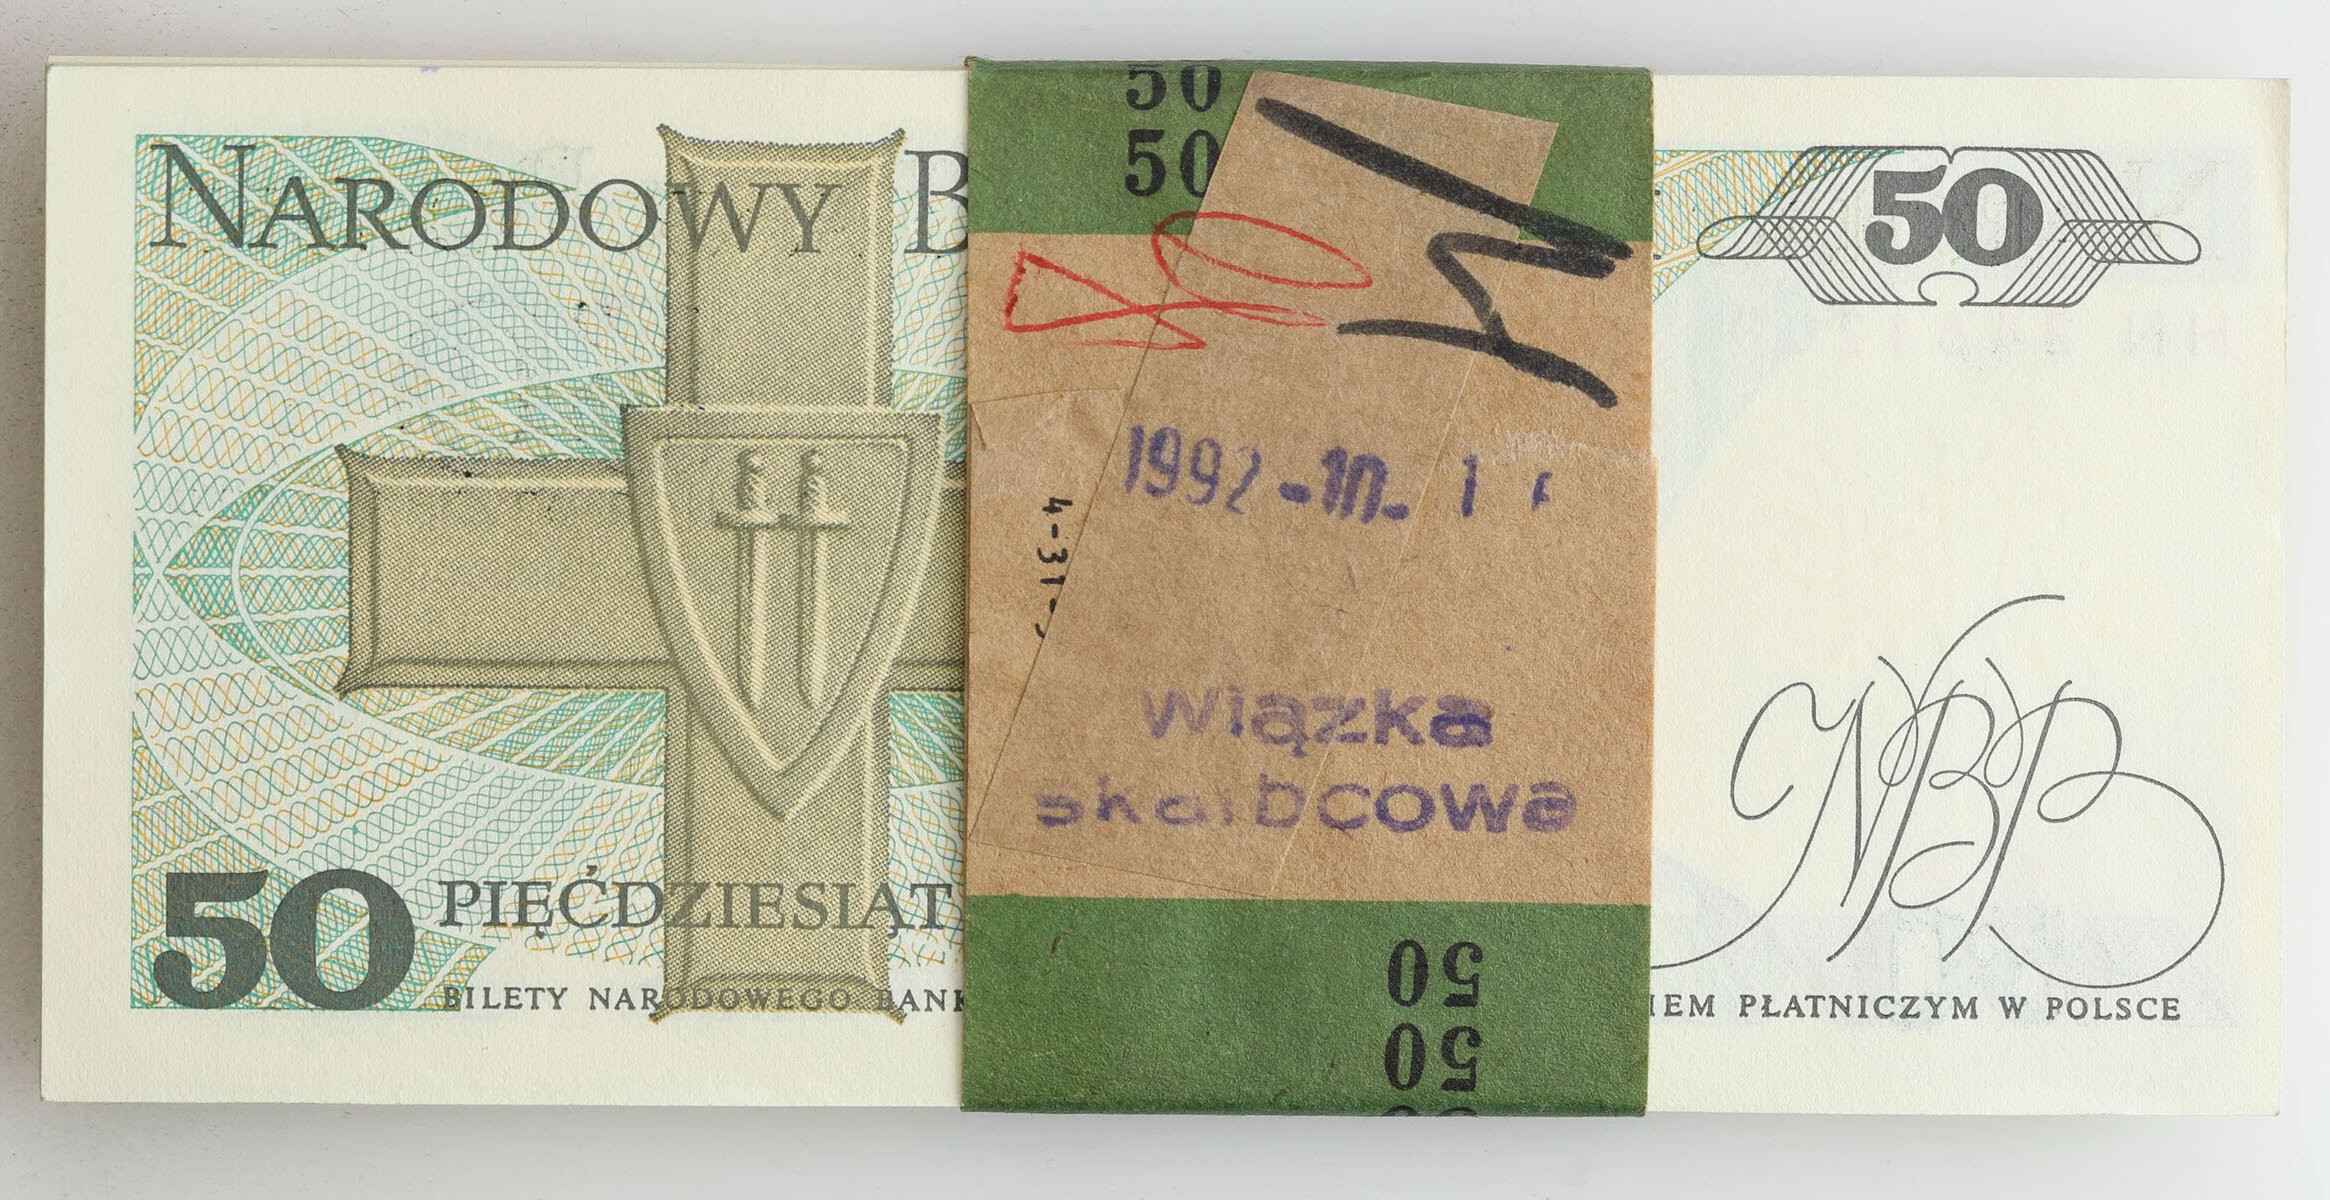 50 złotych 1988 seria HN – paczka bankowa